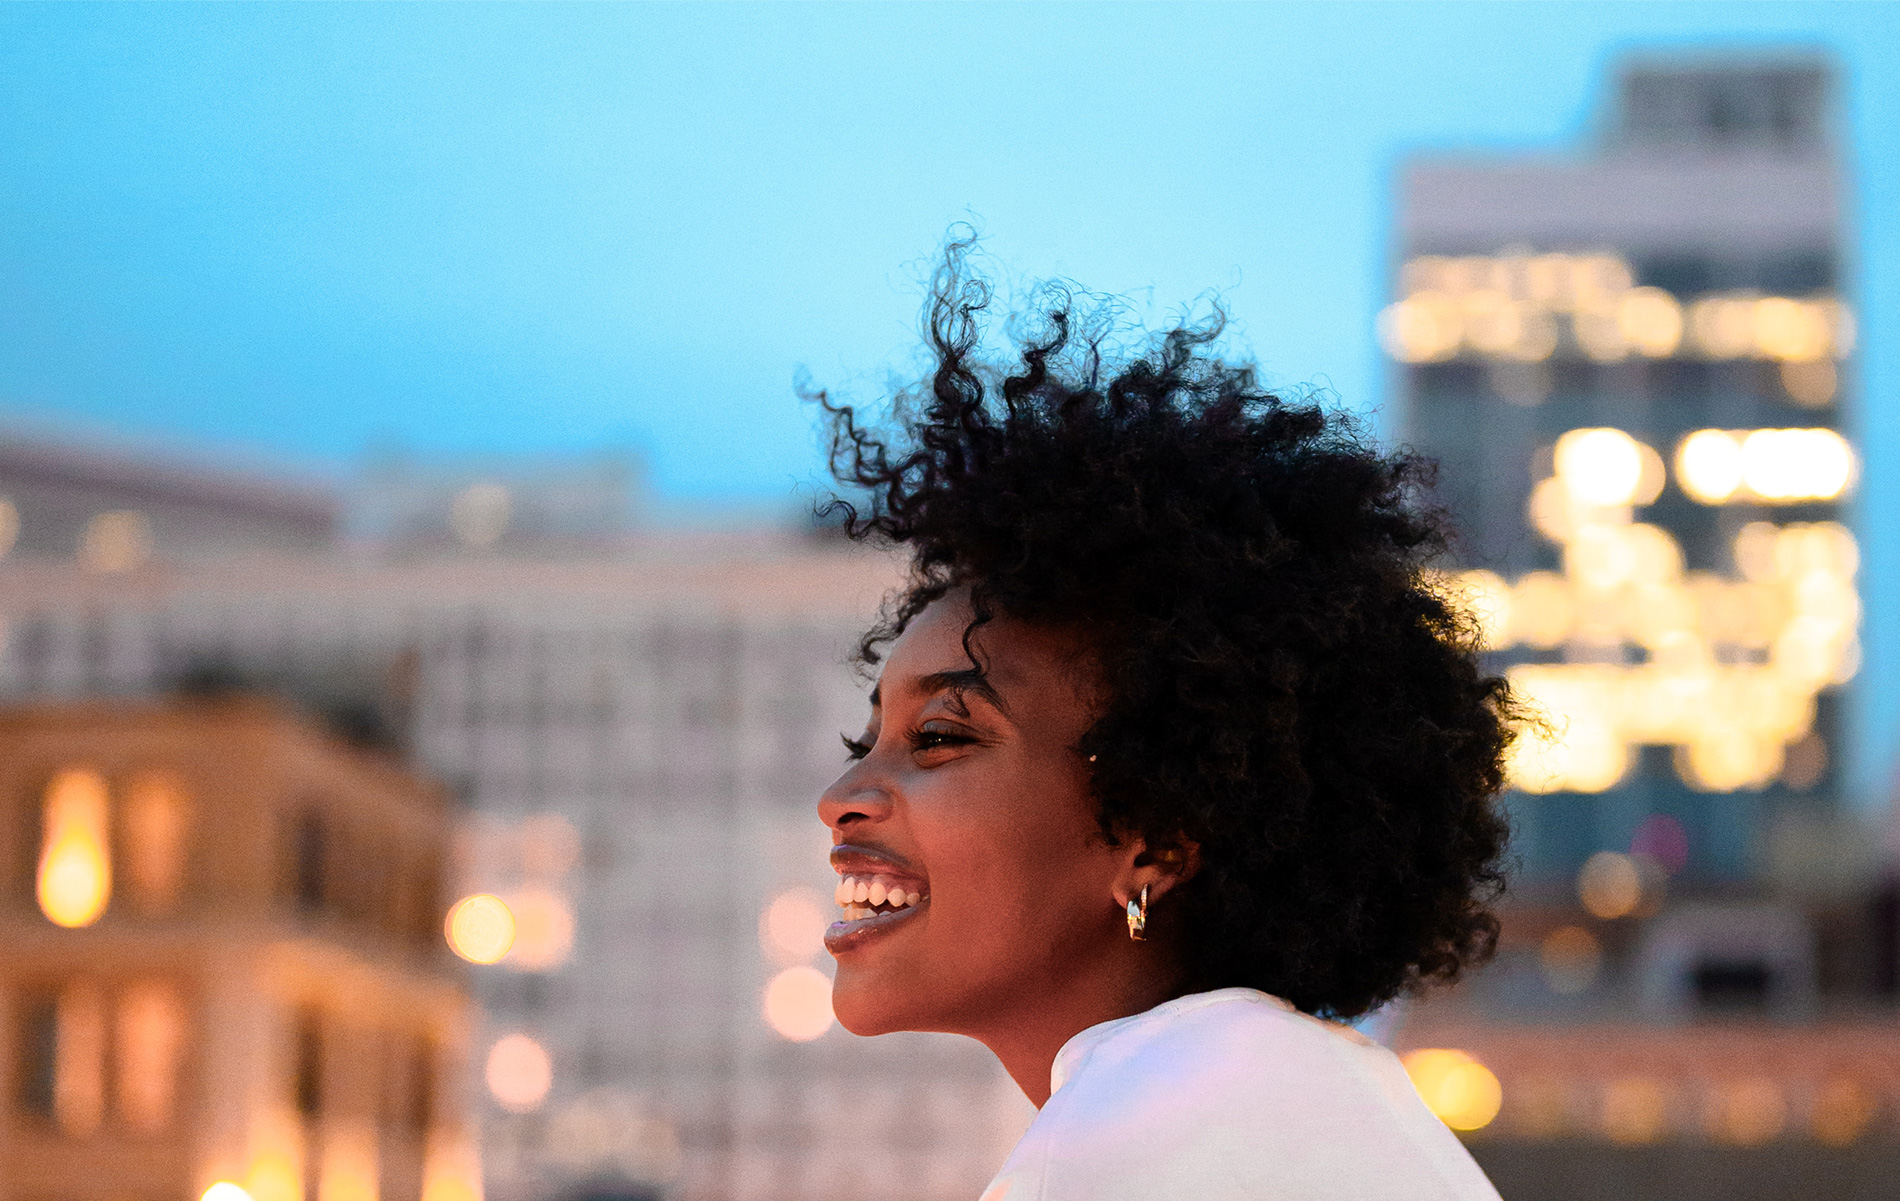 A smiling black woman